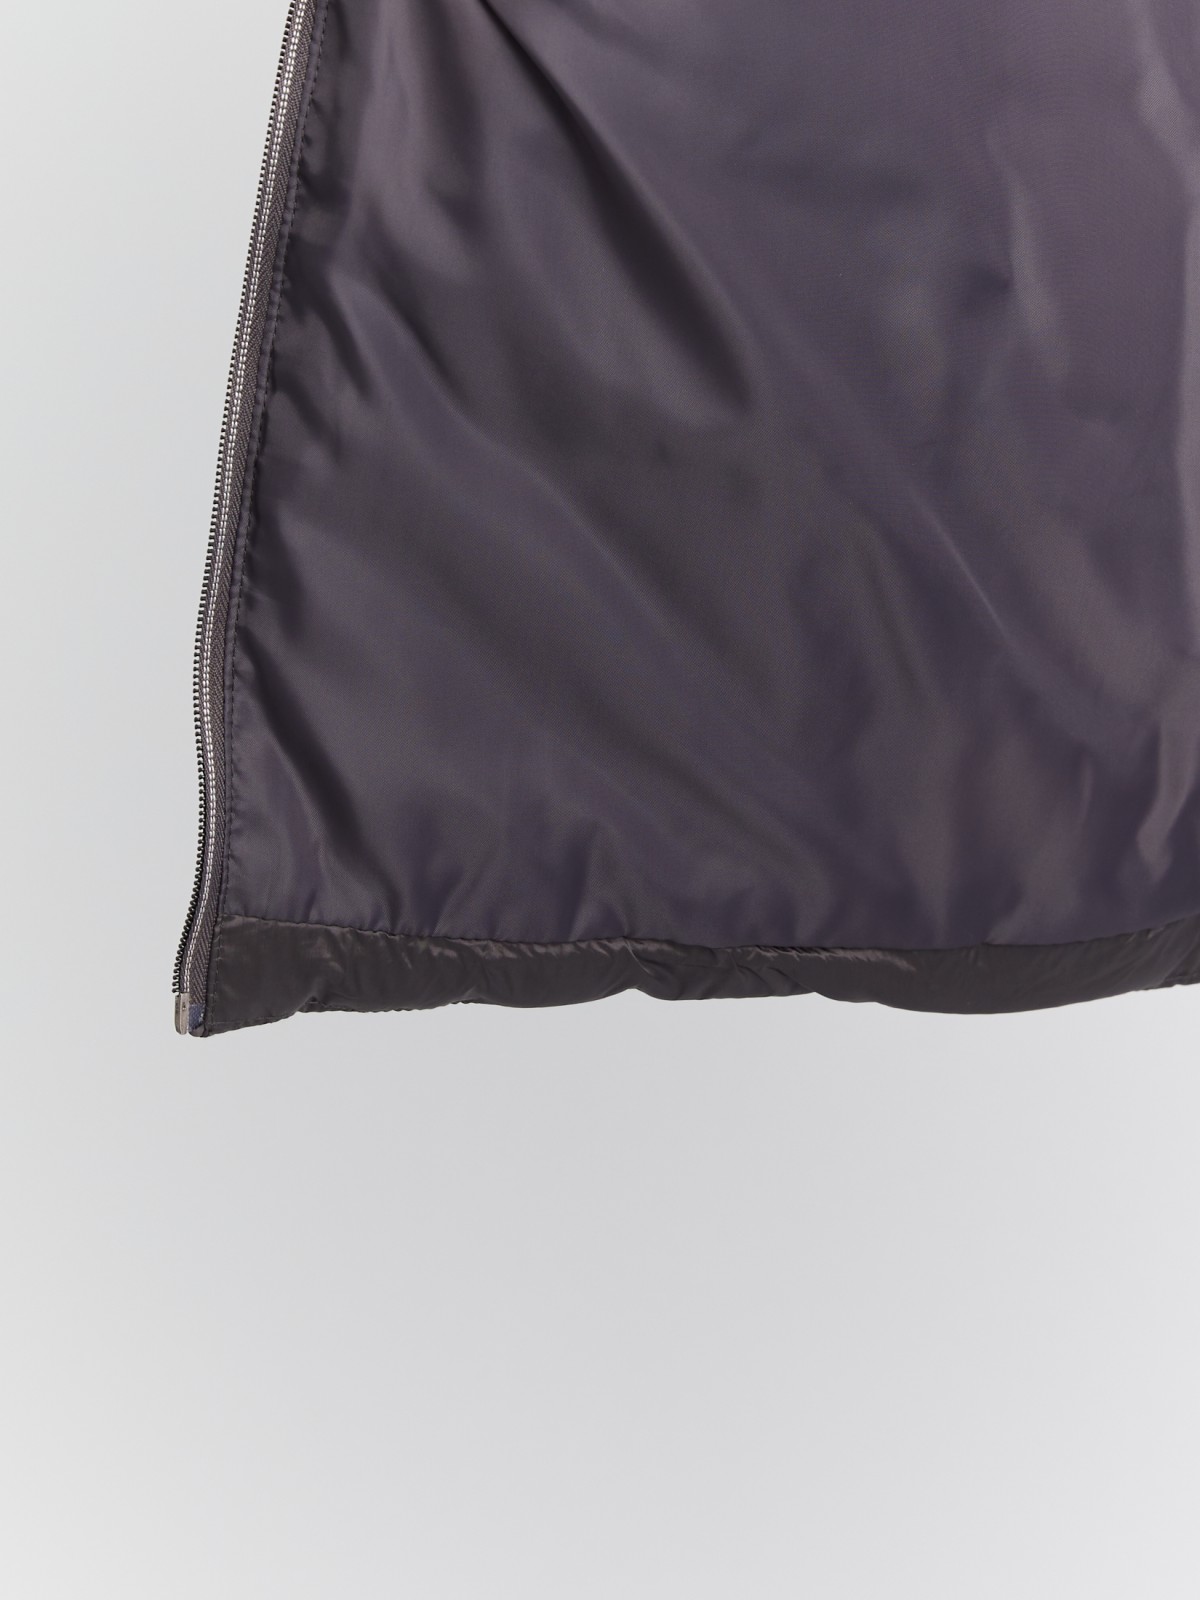 Тёплая укороченная куртка с воротником-стойкой и трикотажными манжетами zolla 023345102254, цвет темно-серый, размер XS - фото 5